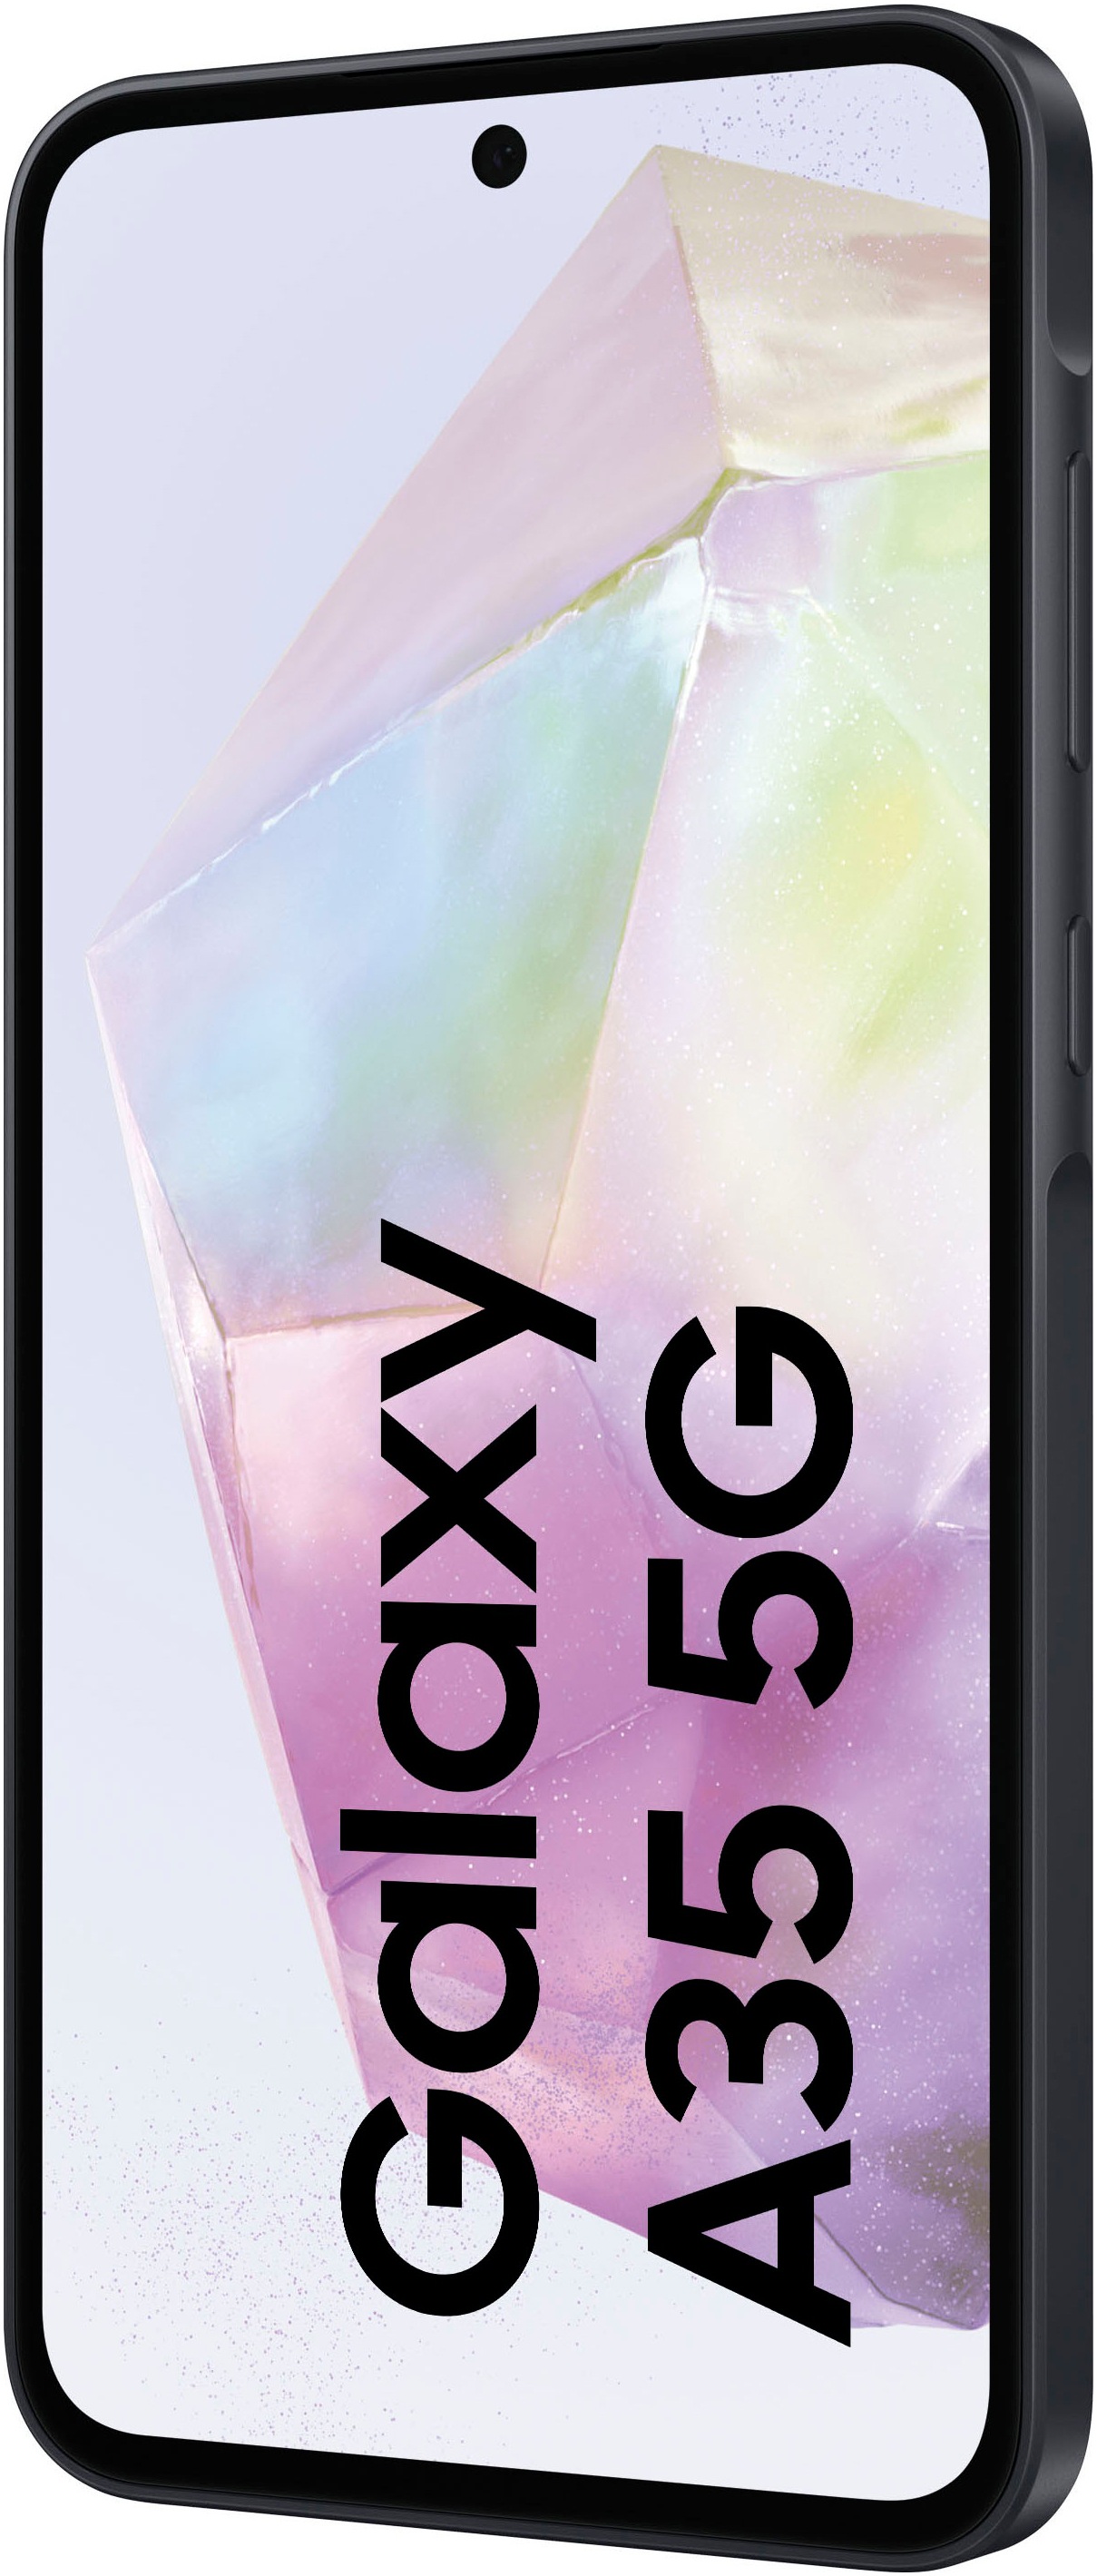 Samsung Smartphone »Galaxy A35 5G 256GB«, Marineblau, 16,83 cm/6,6 Zoll, 256 GB Speicherplatz, 50 MP Kamera